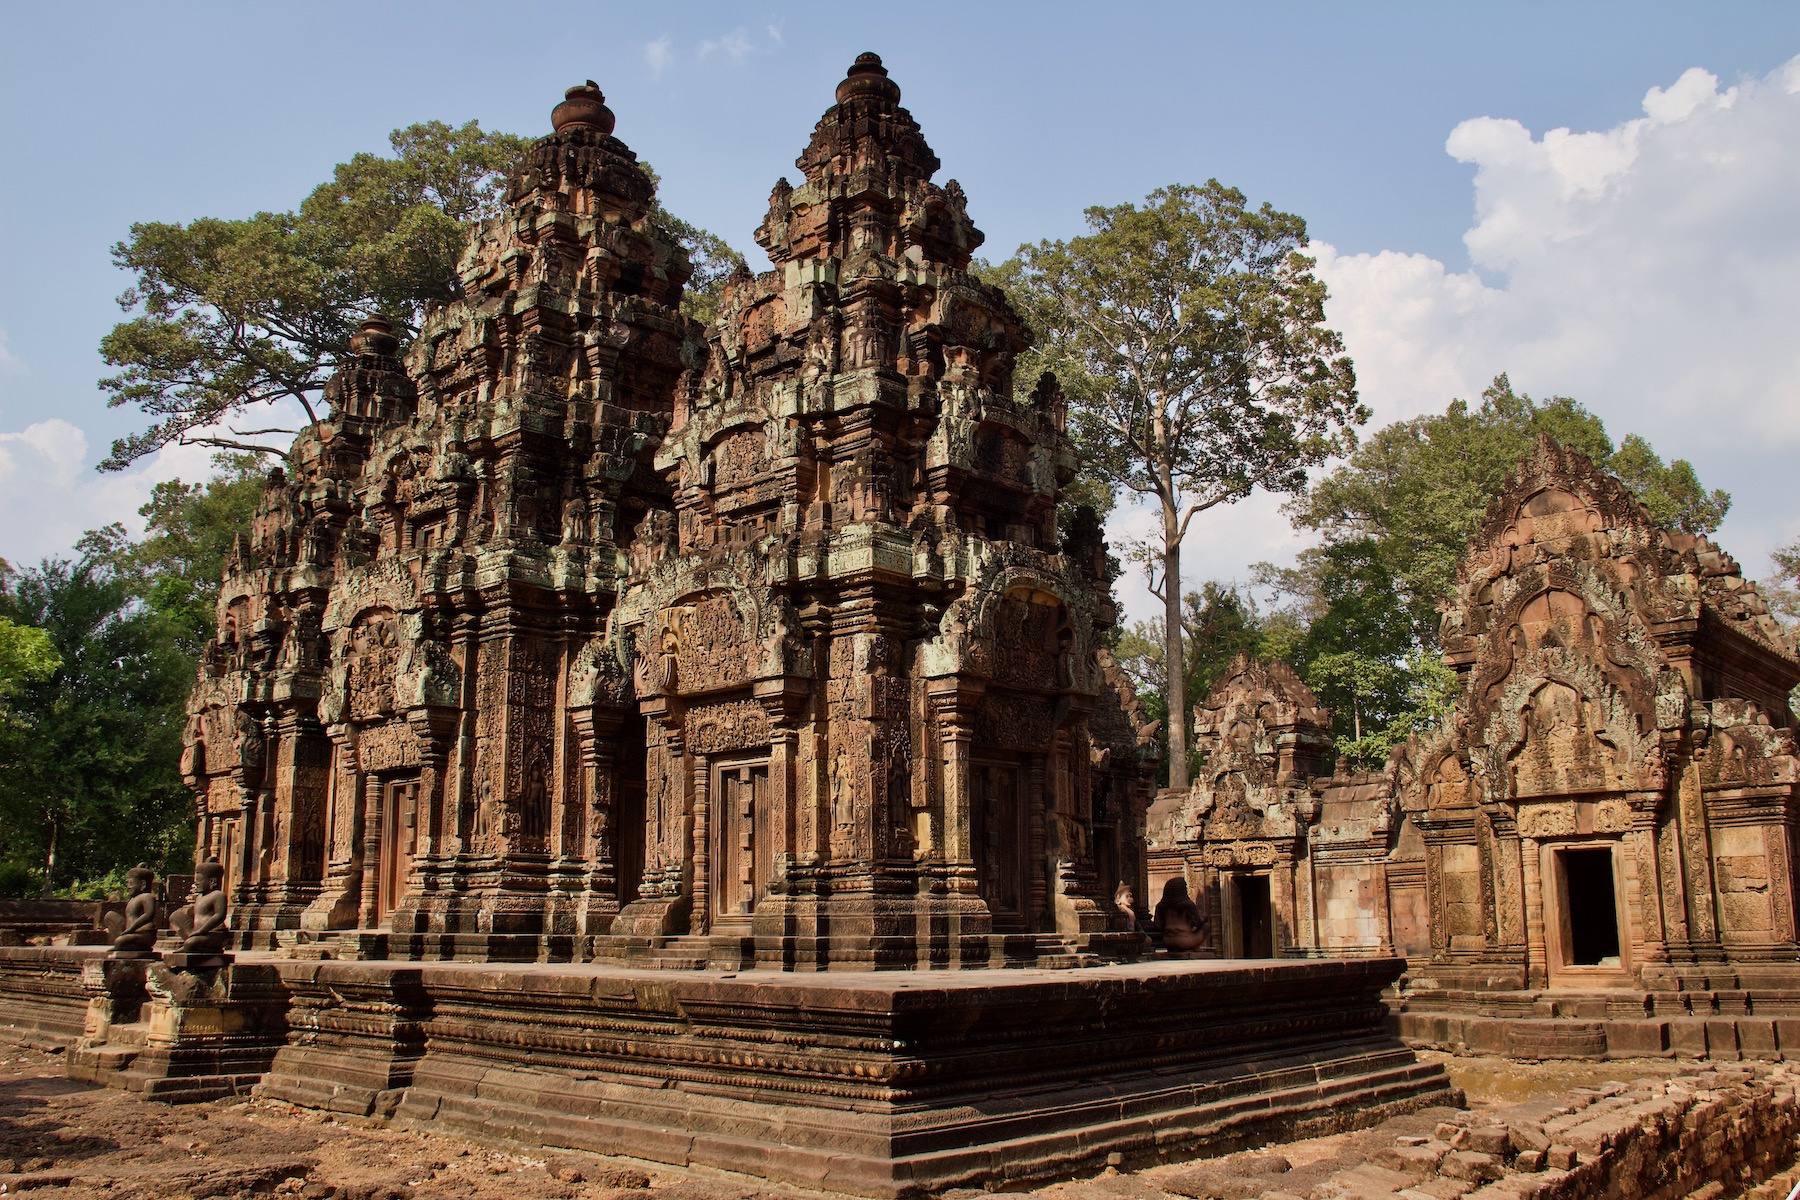 Temple at Angkor Wat in Cambodia